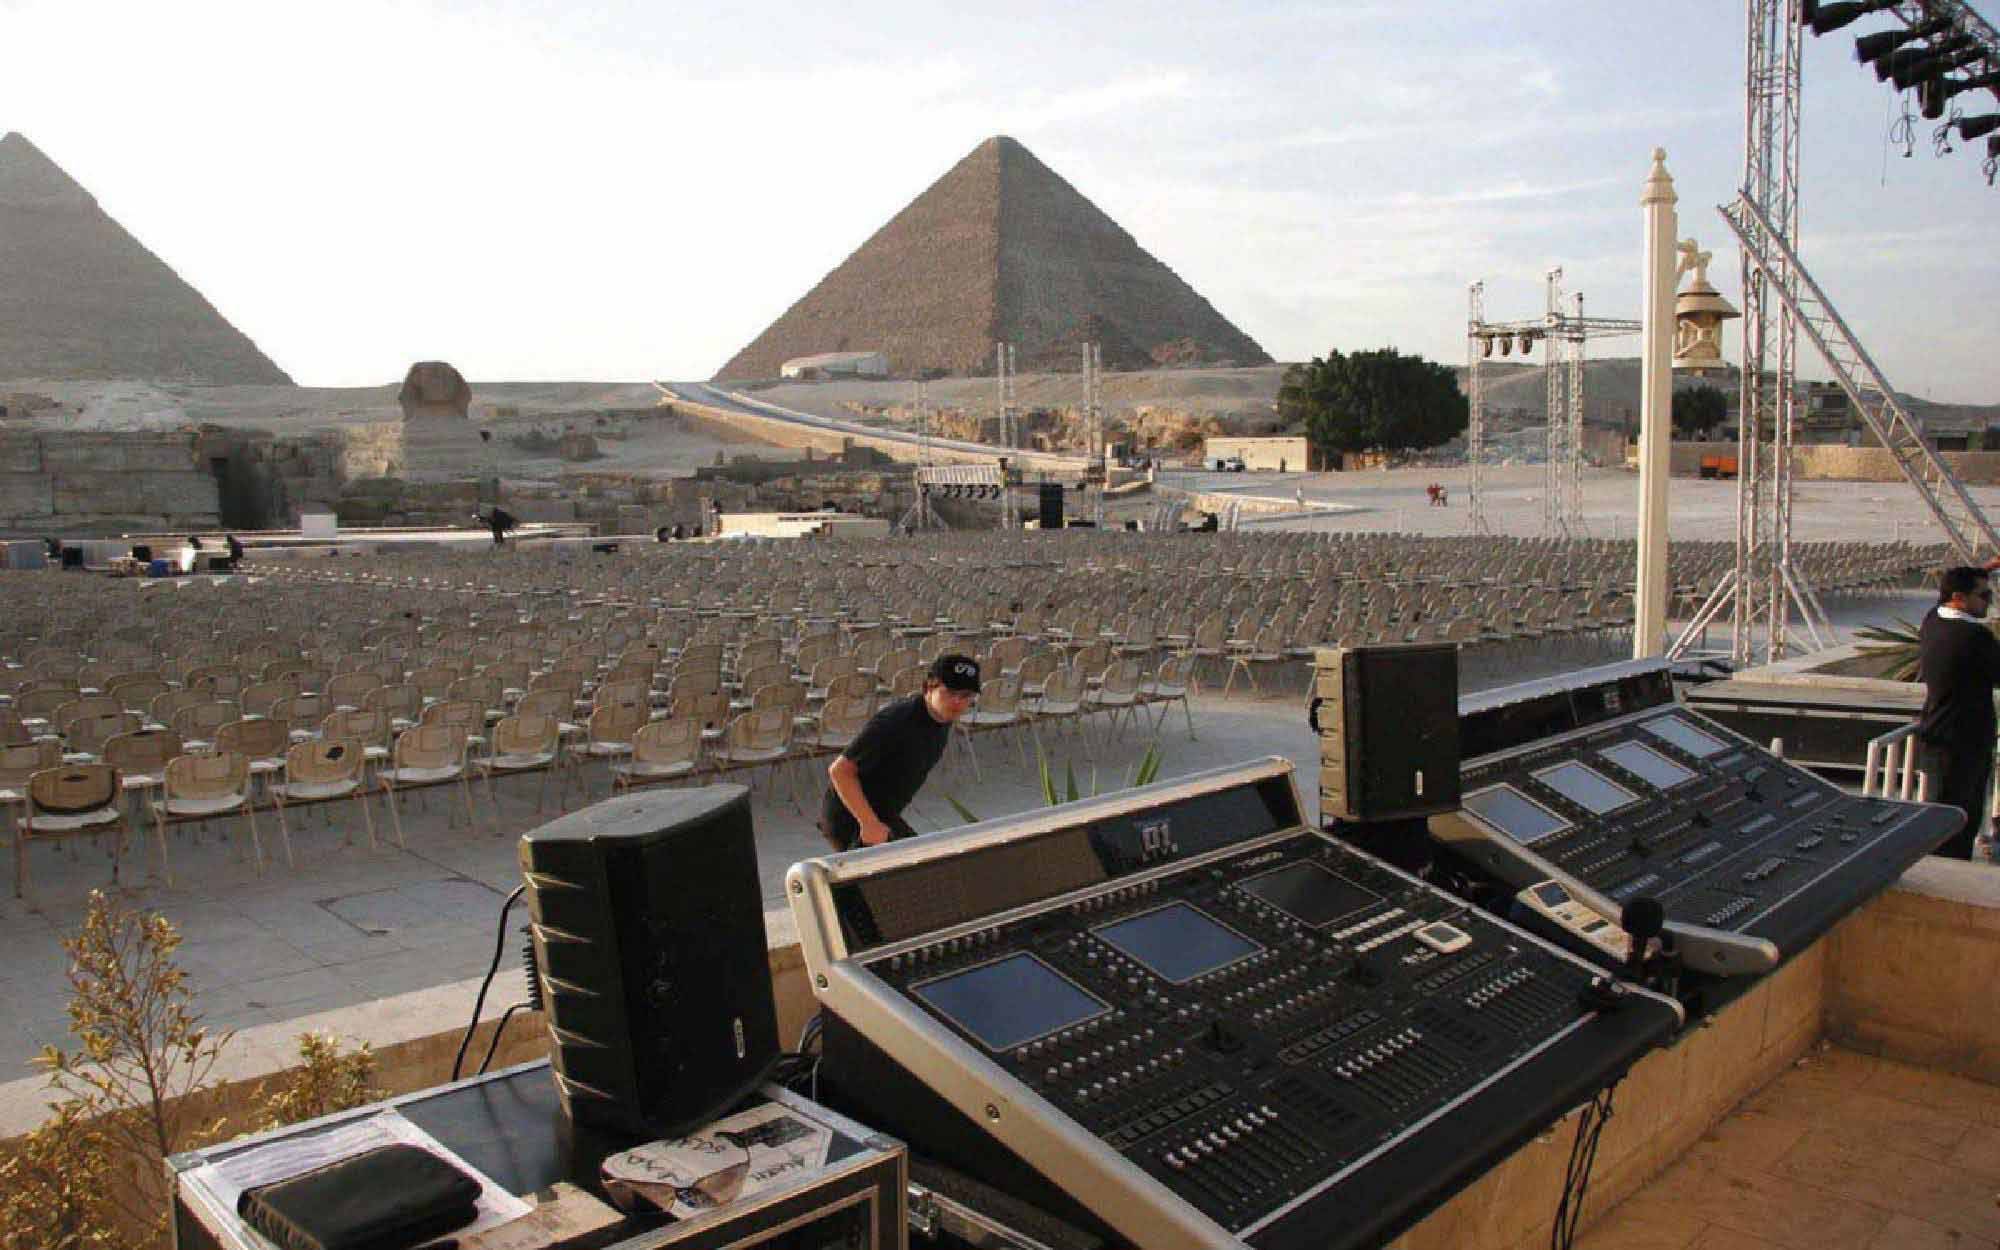 Sound & Light Show at Pyramids